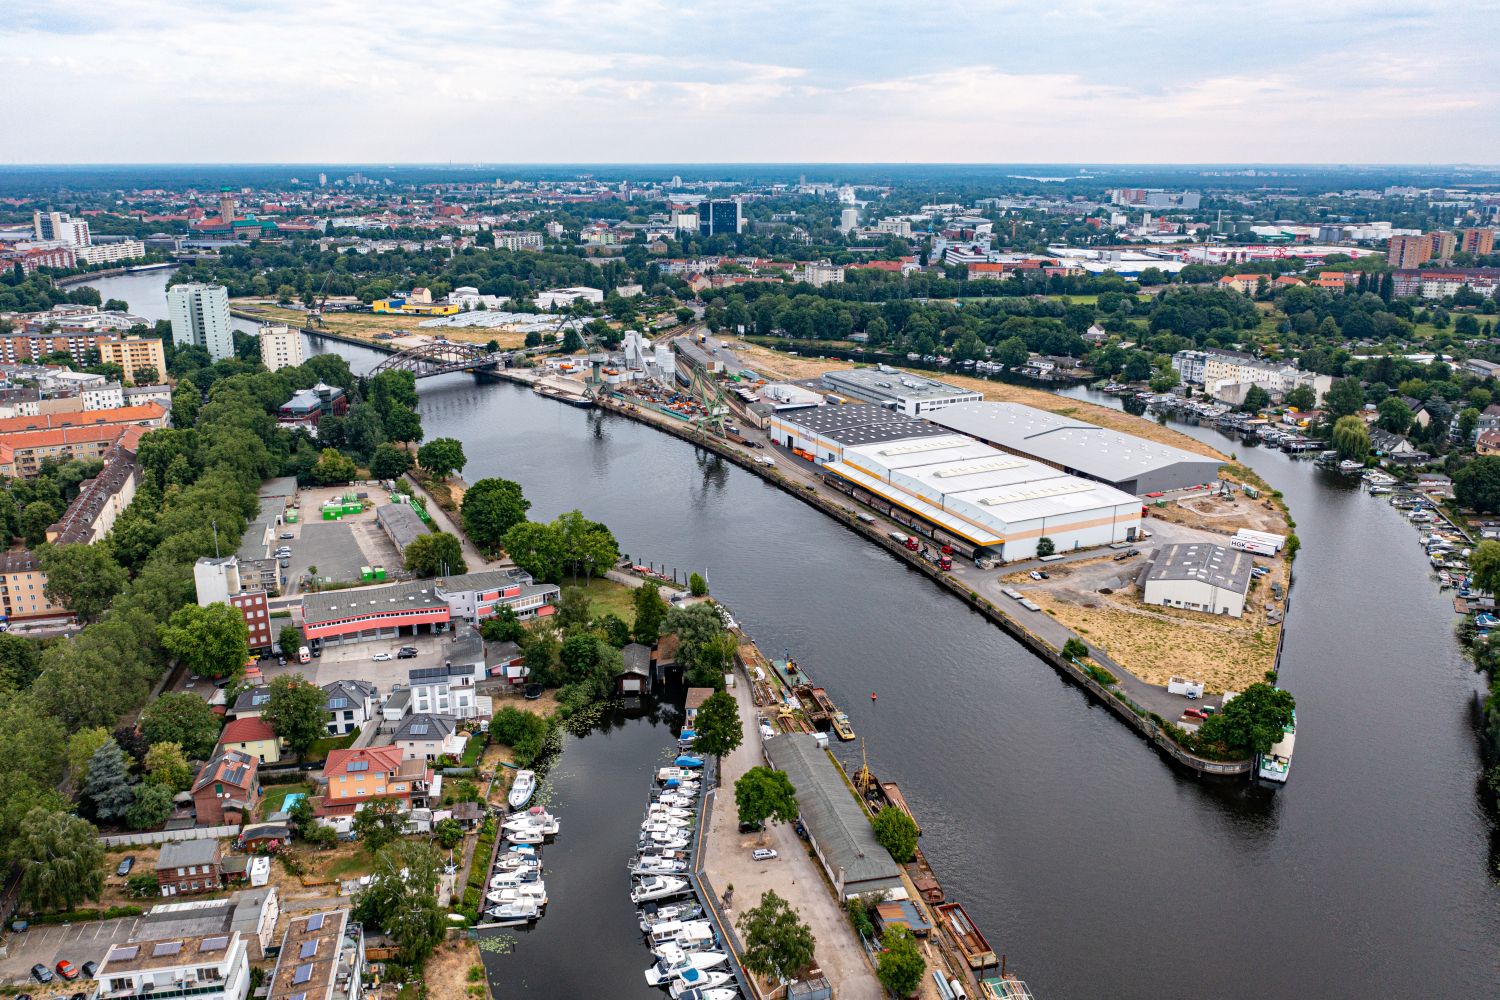 Luftbildaufnahme des Südhafens mit Schulenburgbrücke, Havel und Umgebung des Gebiets sind zu sehen.